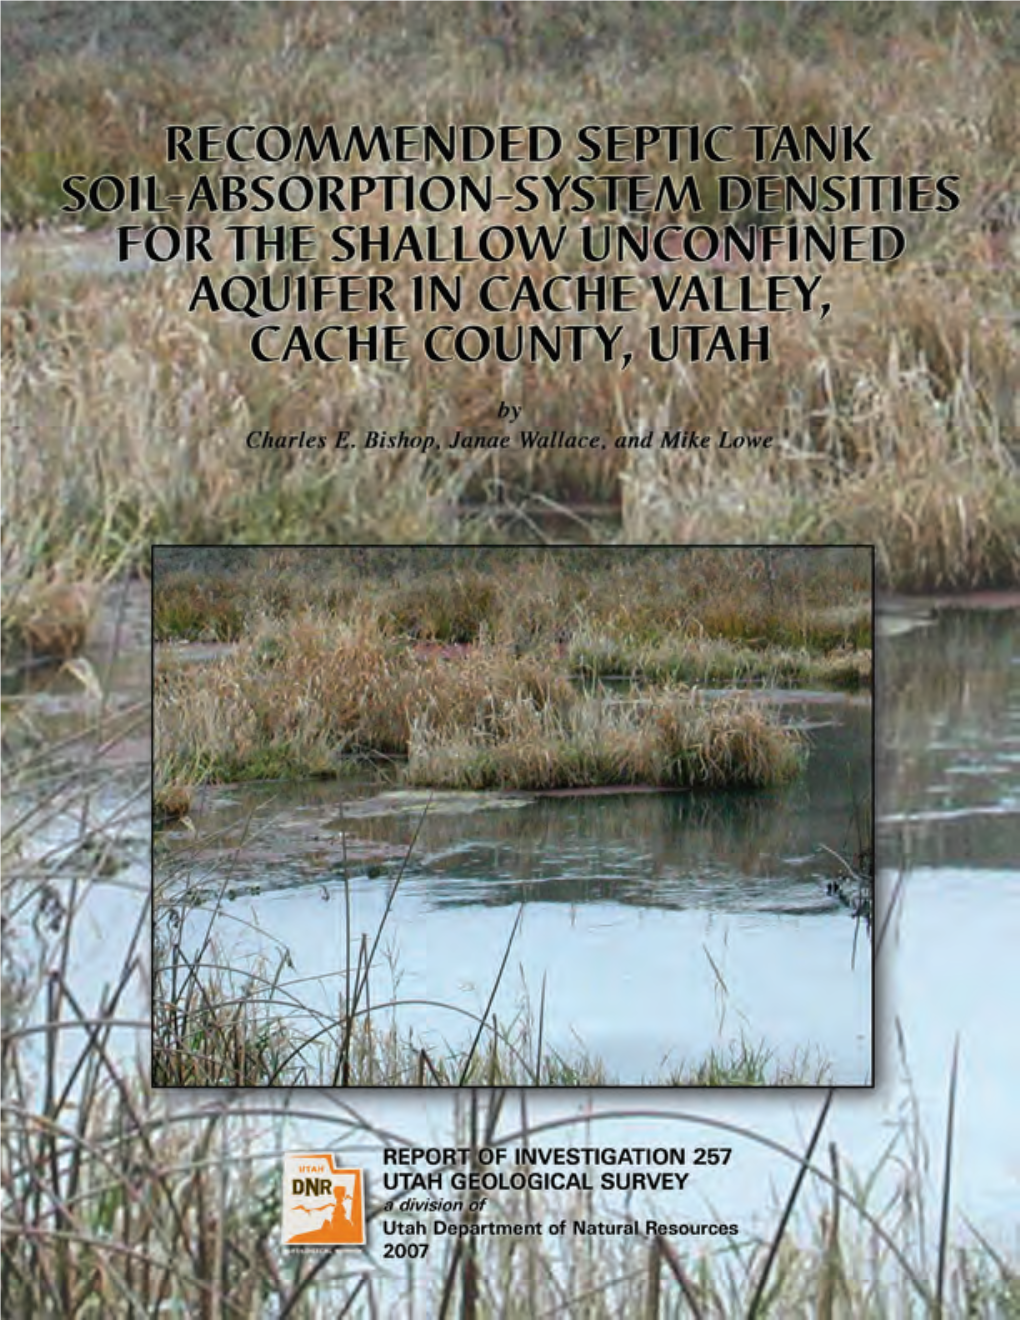 REPORT of INVESTIGATION 257 UTAH GEOLOGICAL SURVEY a Division of Utah Department of Natural Resources 2007 STATE of UTAH Jon Huntsman, Jr., Governor